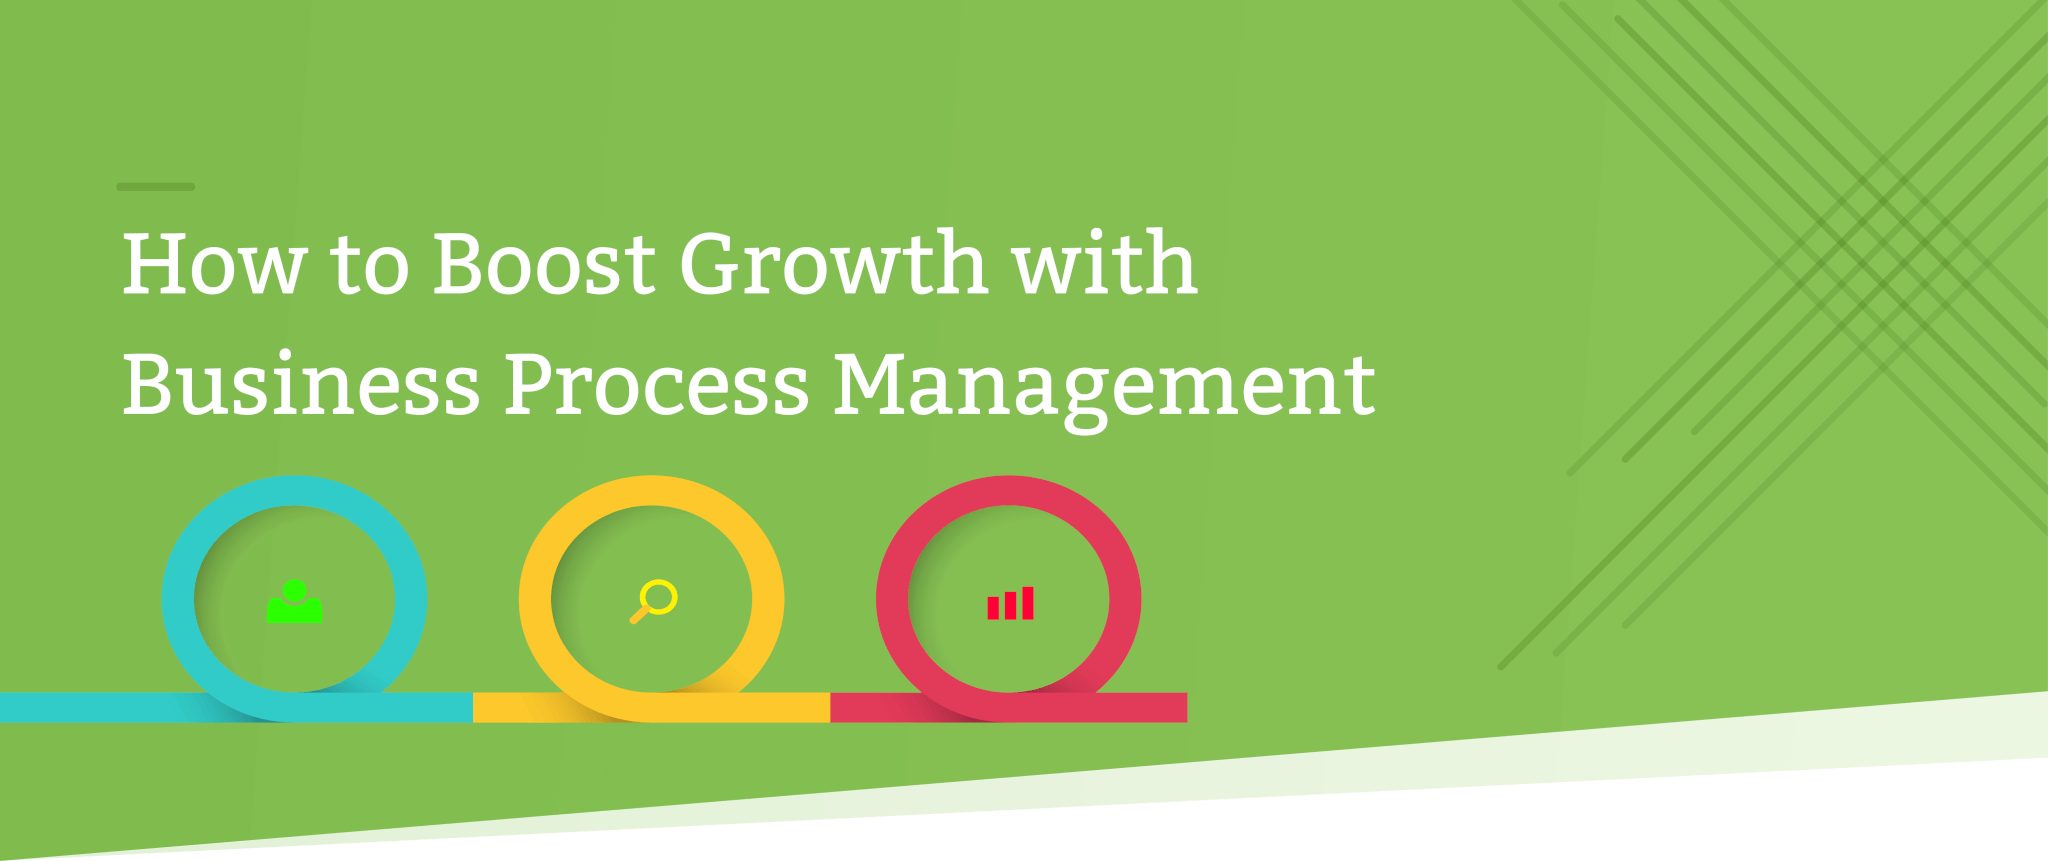 business process management header